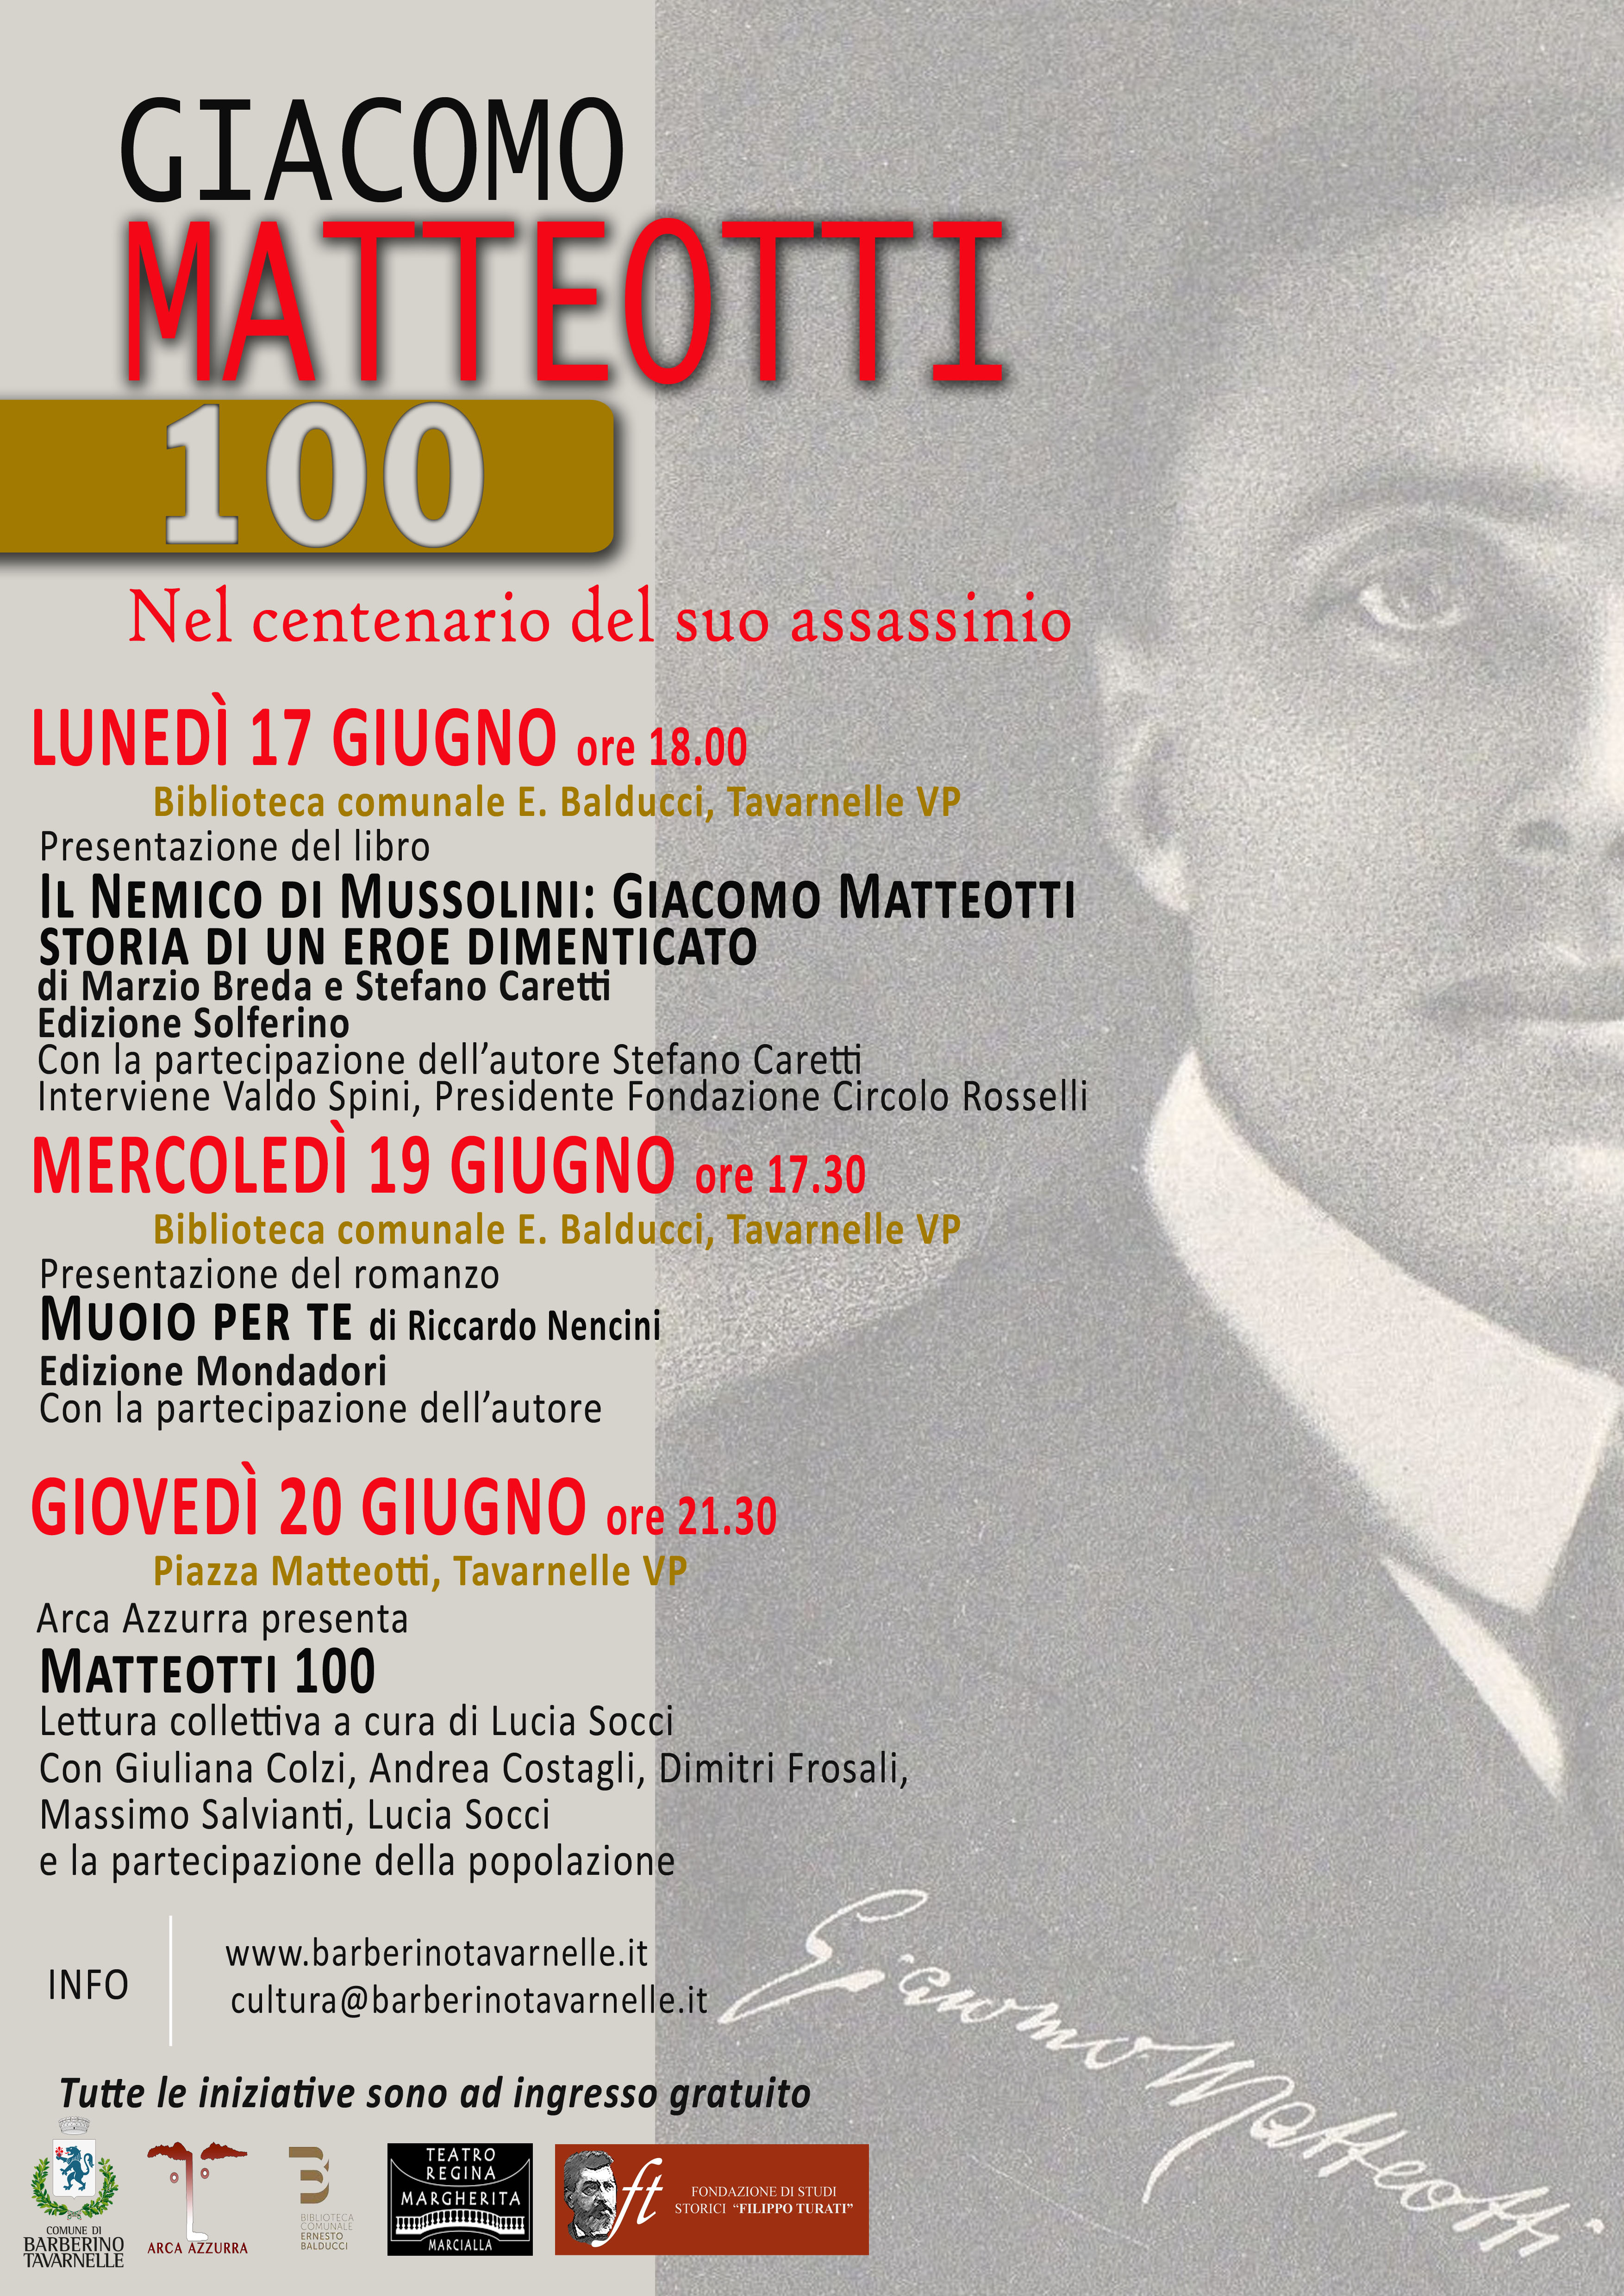 Matteotti 100